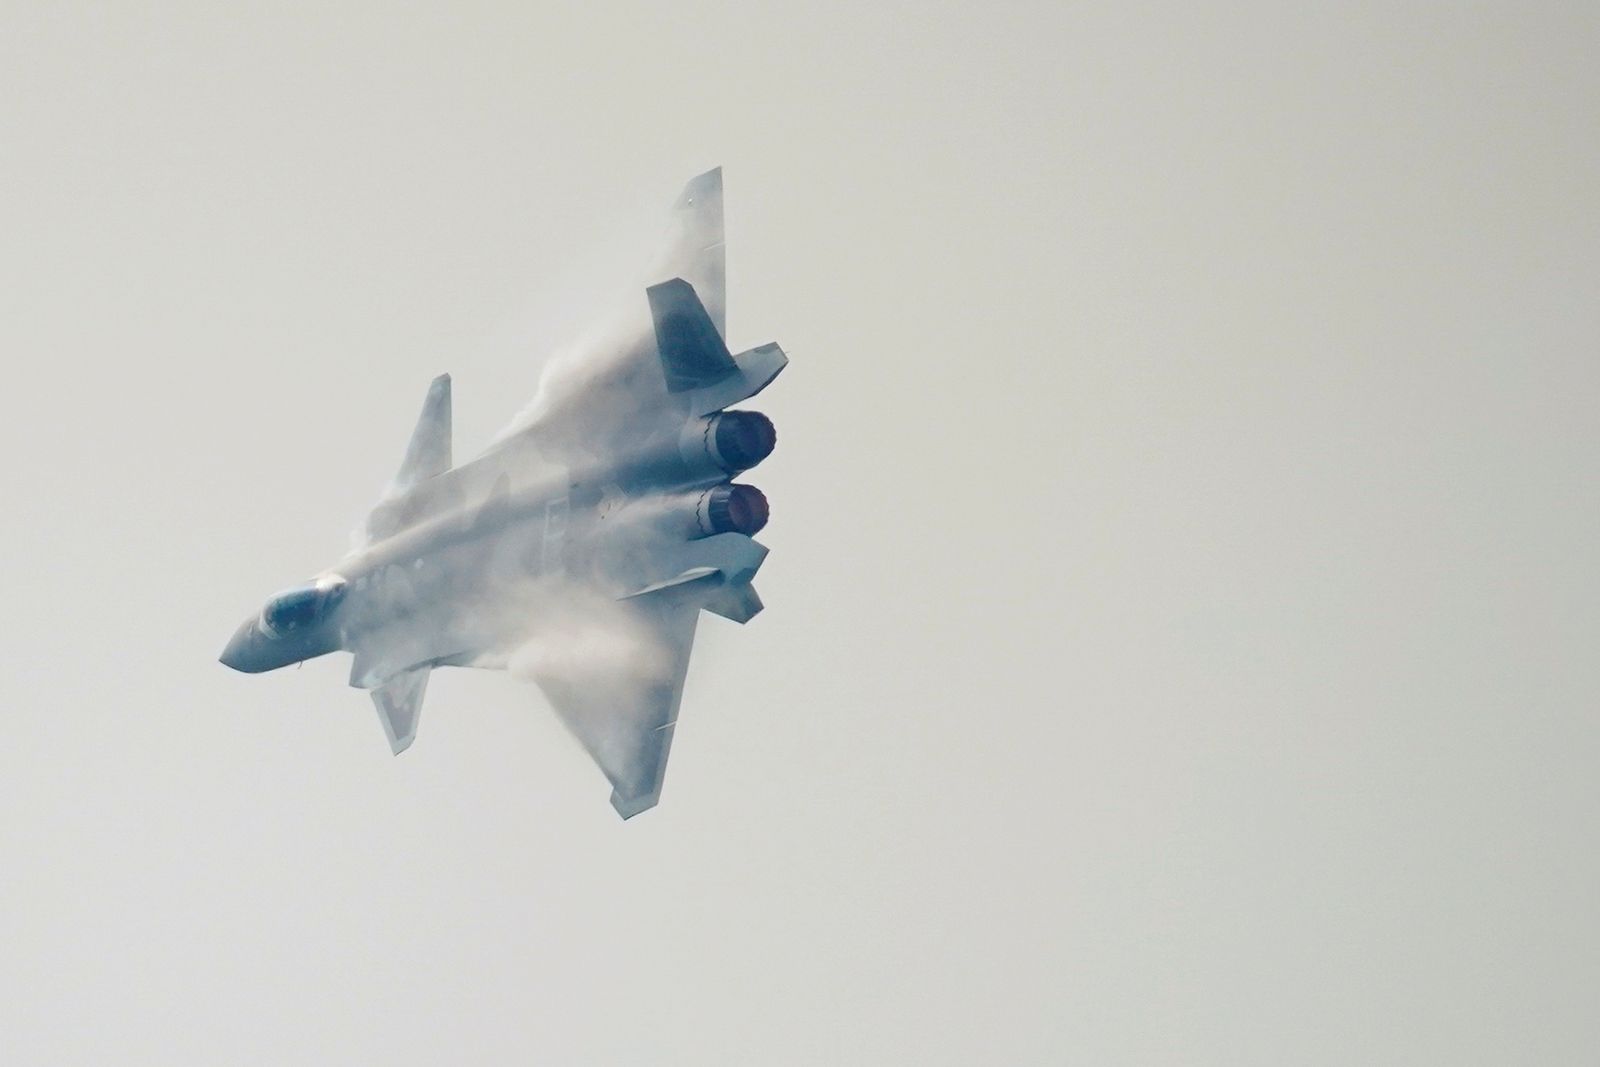 طائرة مقاتلة شبحية من طراز J-20تقدم عروضها في معرض الصين الجوي - 28 سبتمبر 2021 - REUTERS